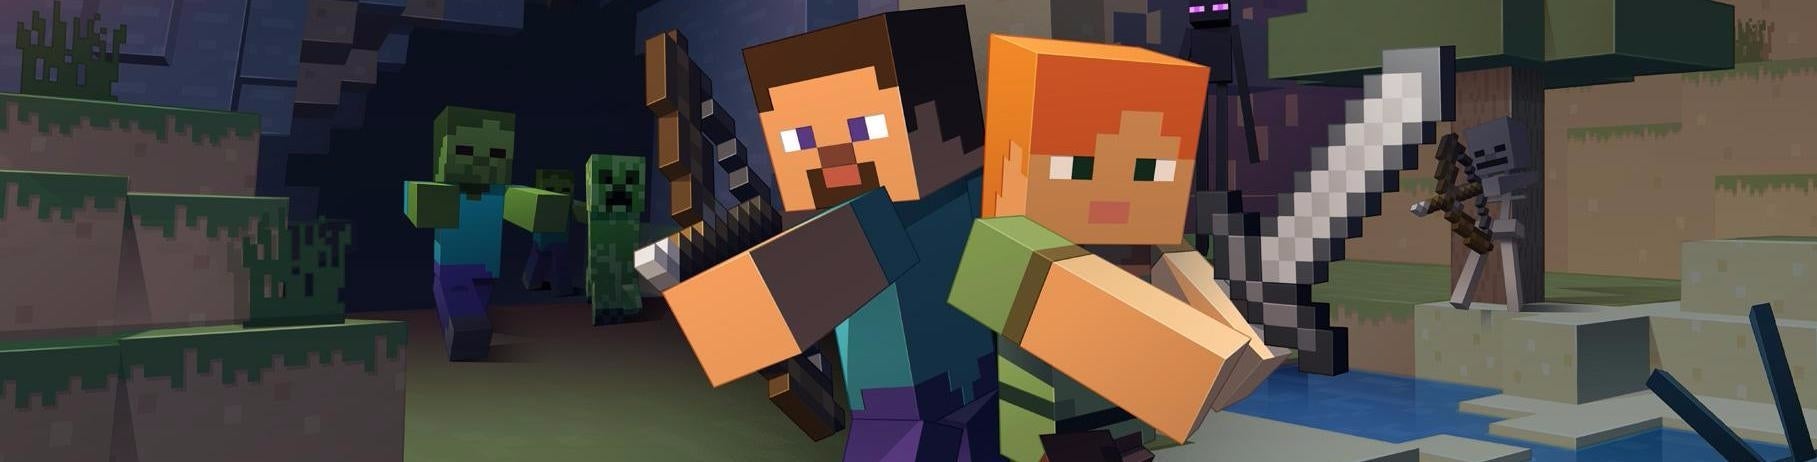 Imagem para Minecraft: Switch comparado com a versão PlayStation 4